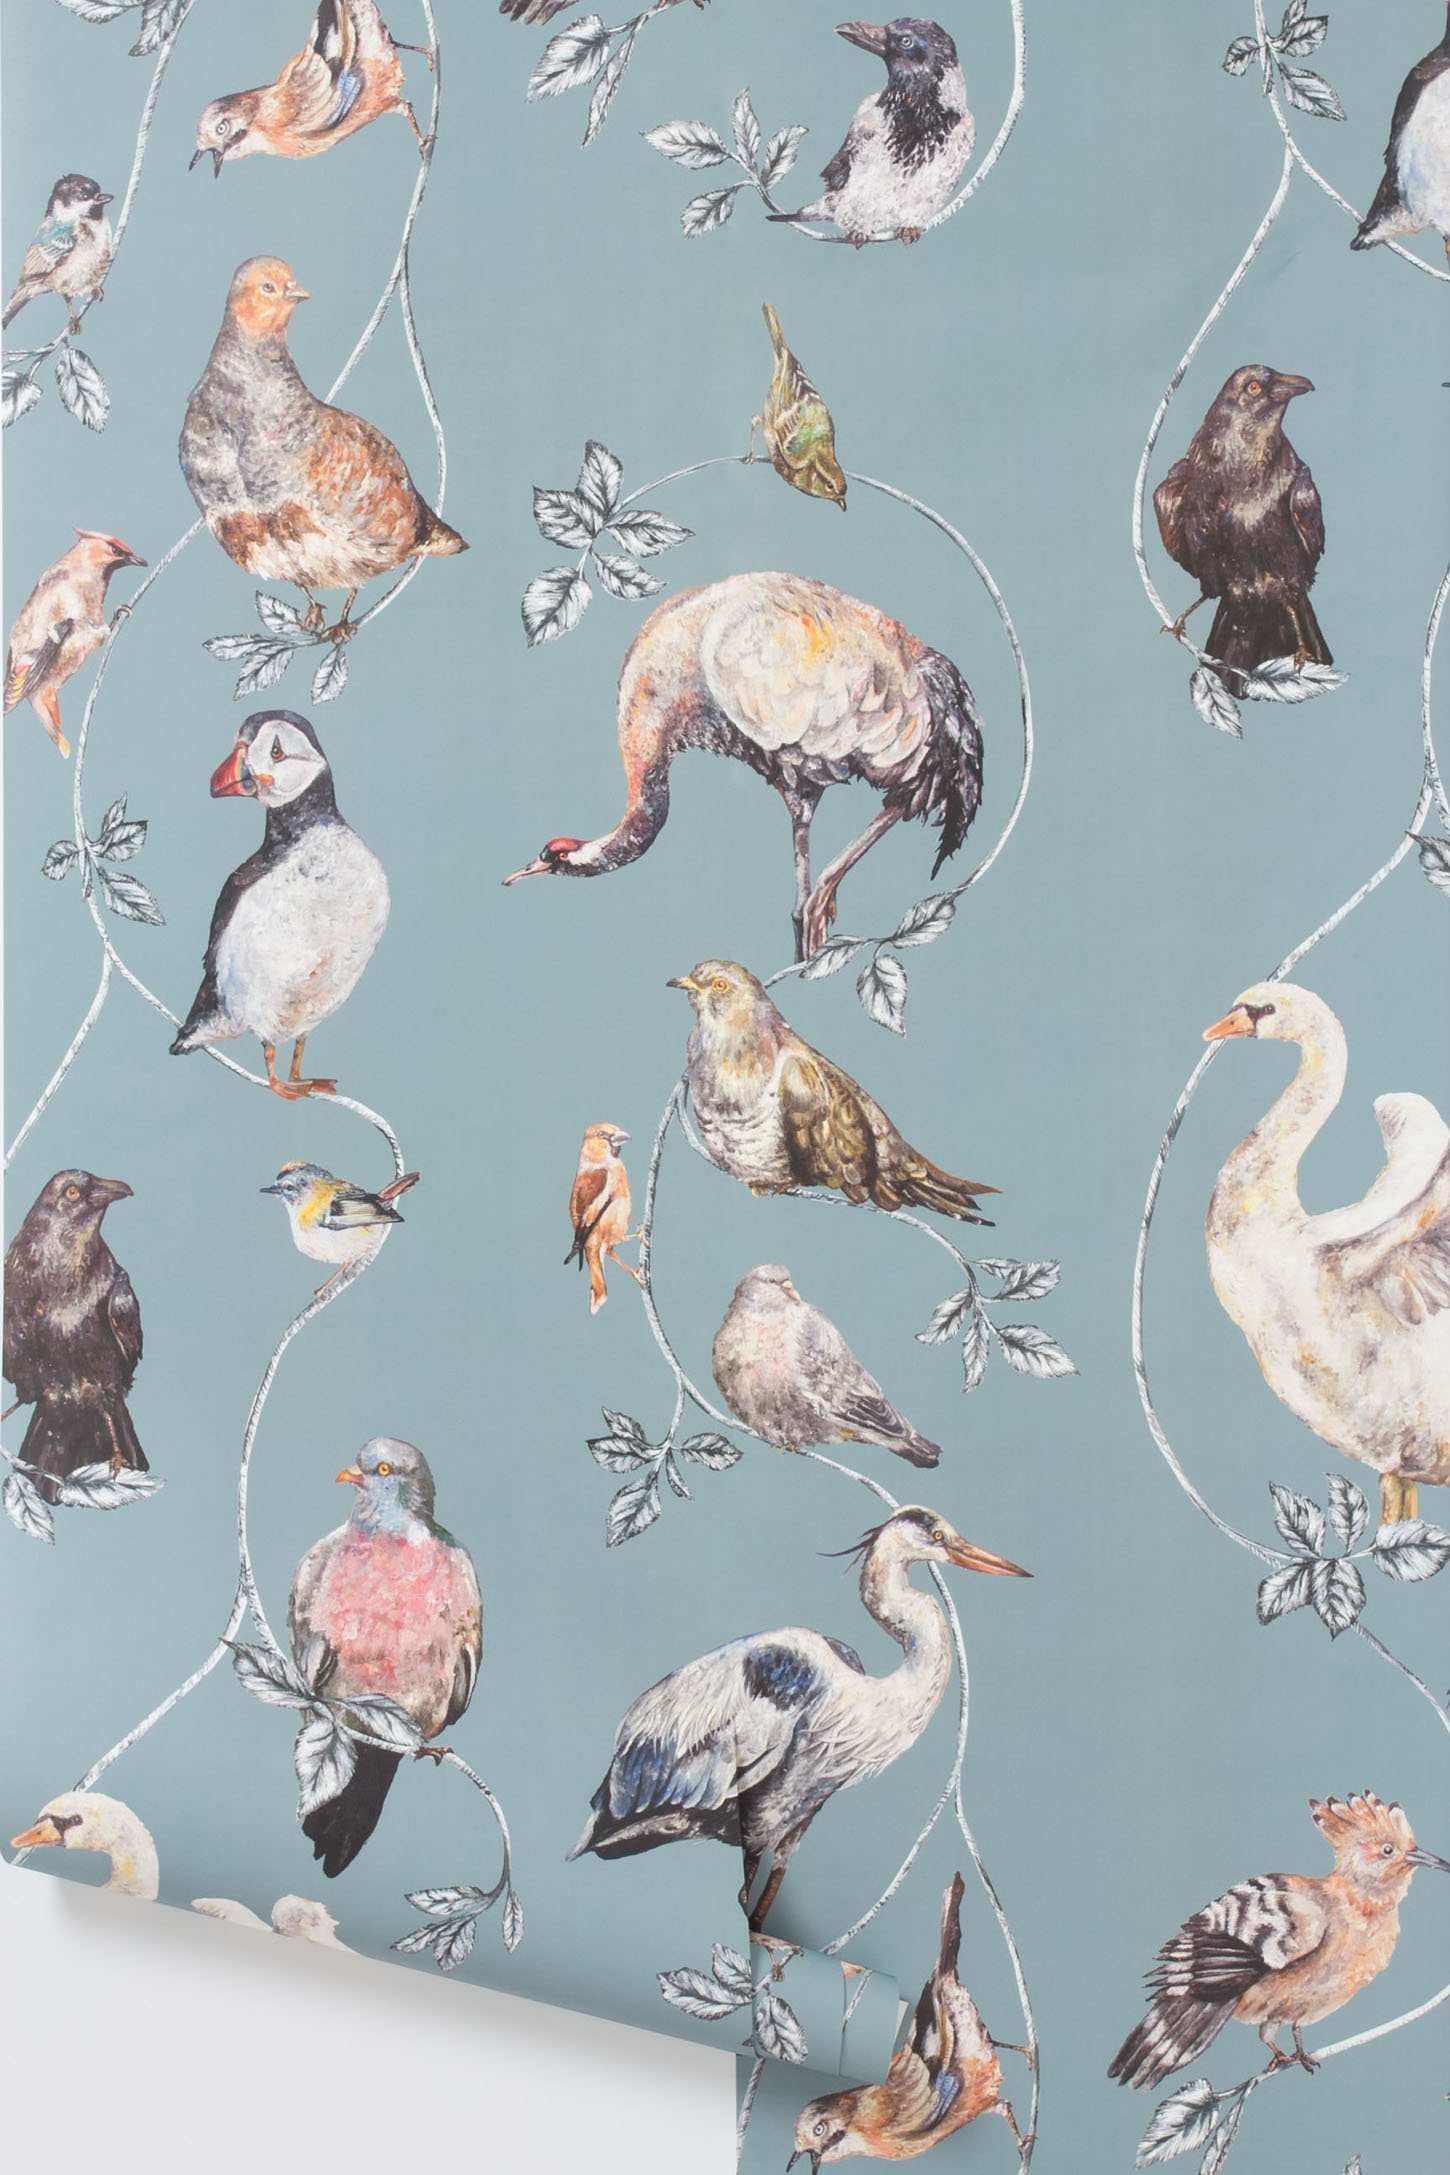 bird wallpaper for home,water bird,flamingo,bird,organism,pattern